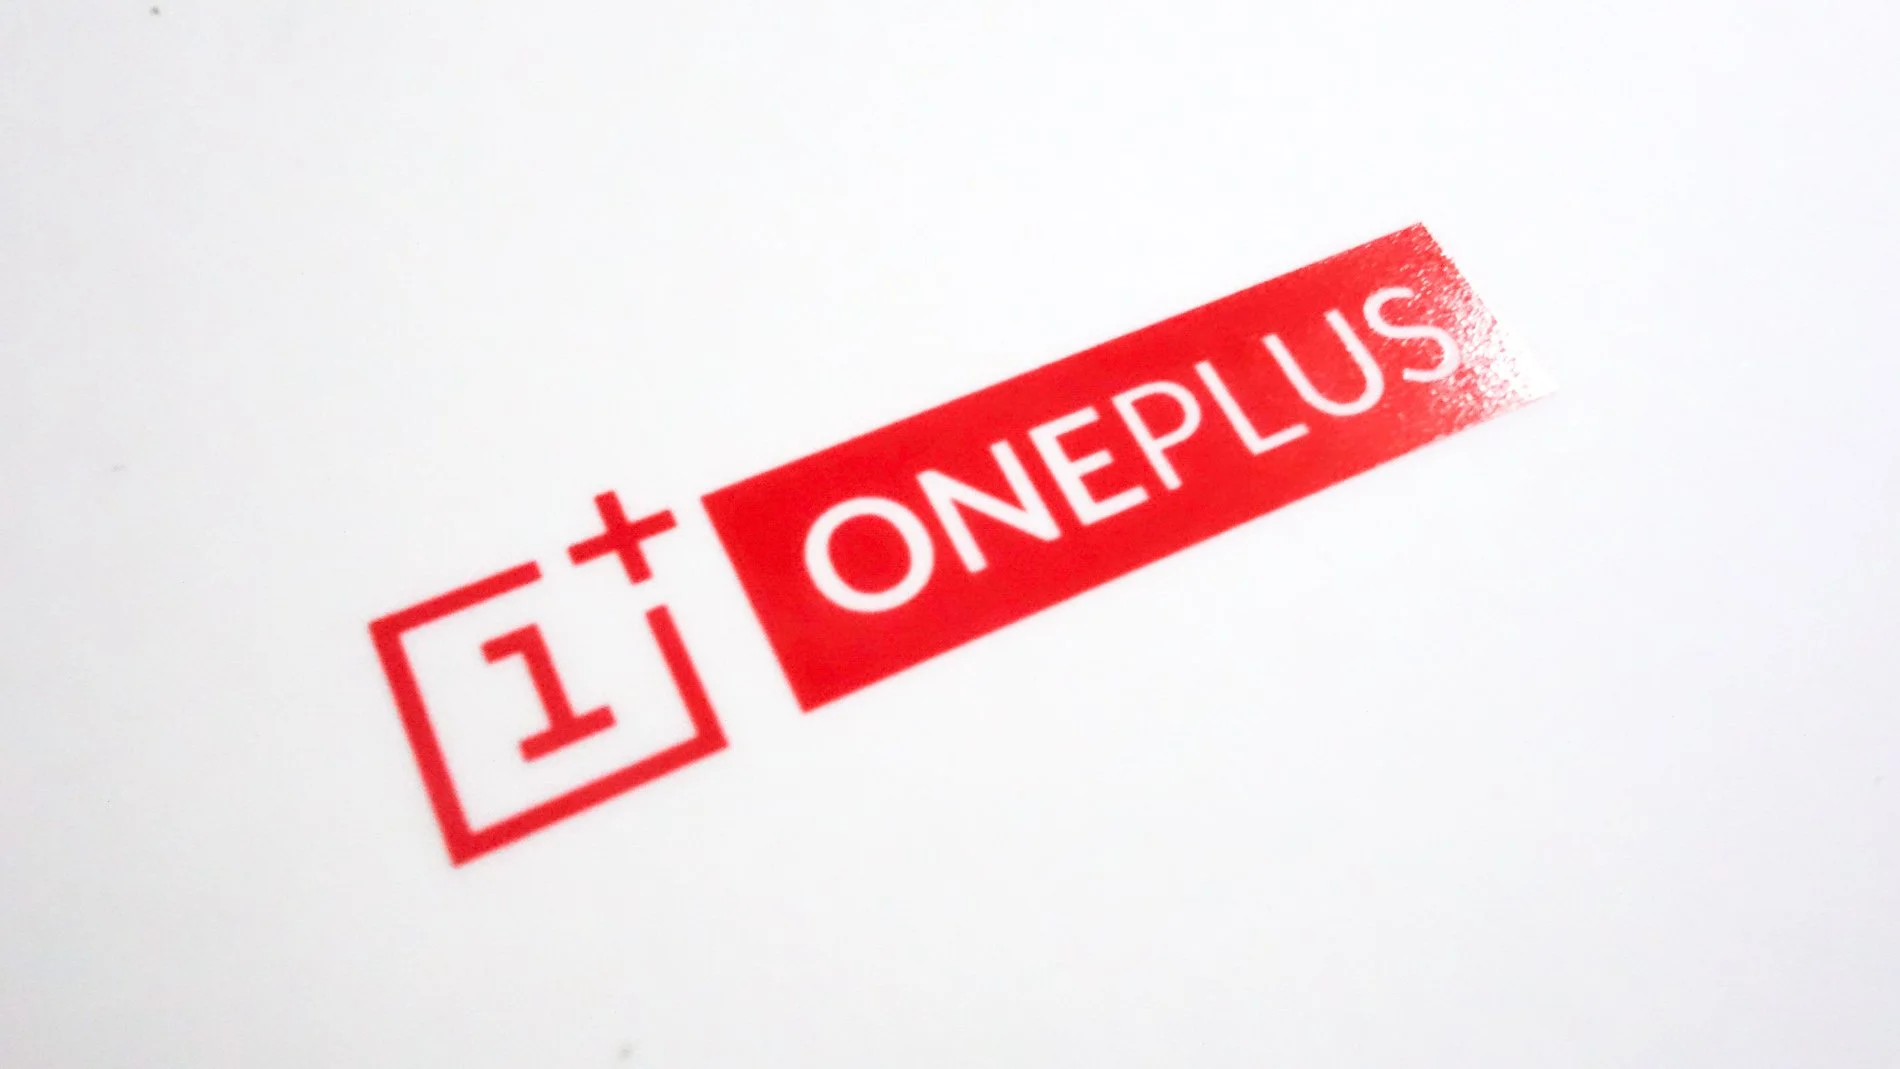 Ой-ой, кажется у кого-то проблемы! OnePlus без спросу собирает личные данные своих пользователей  - фото 1